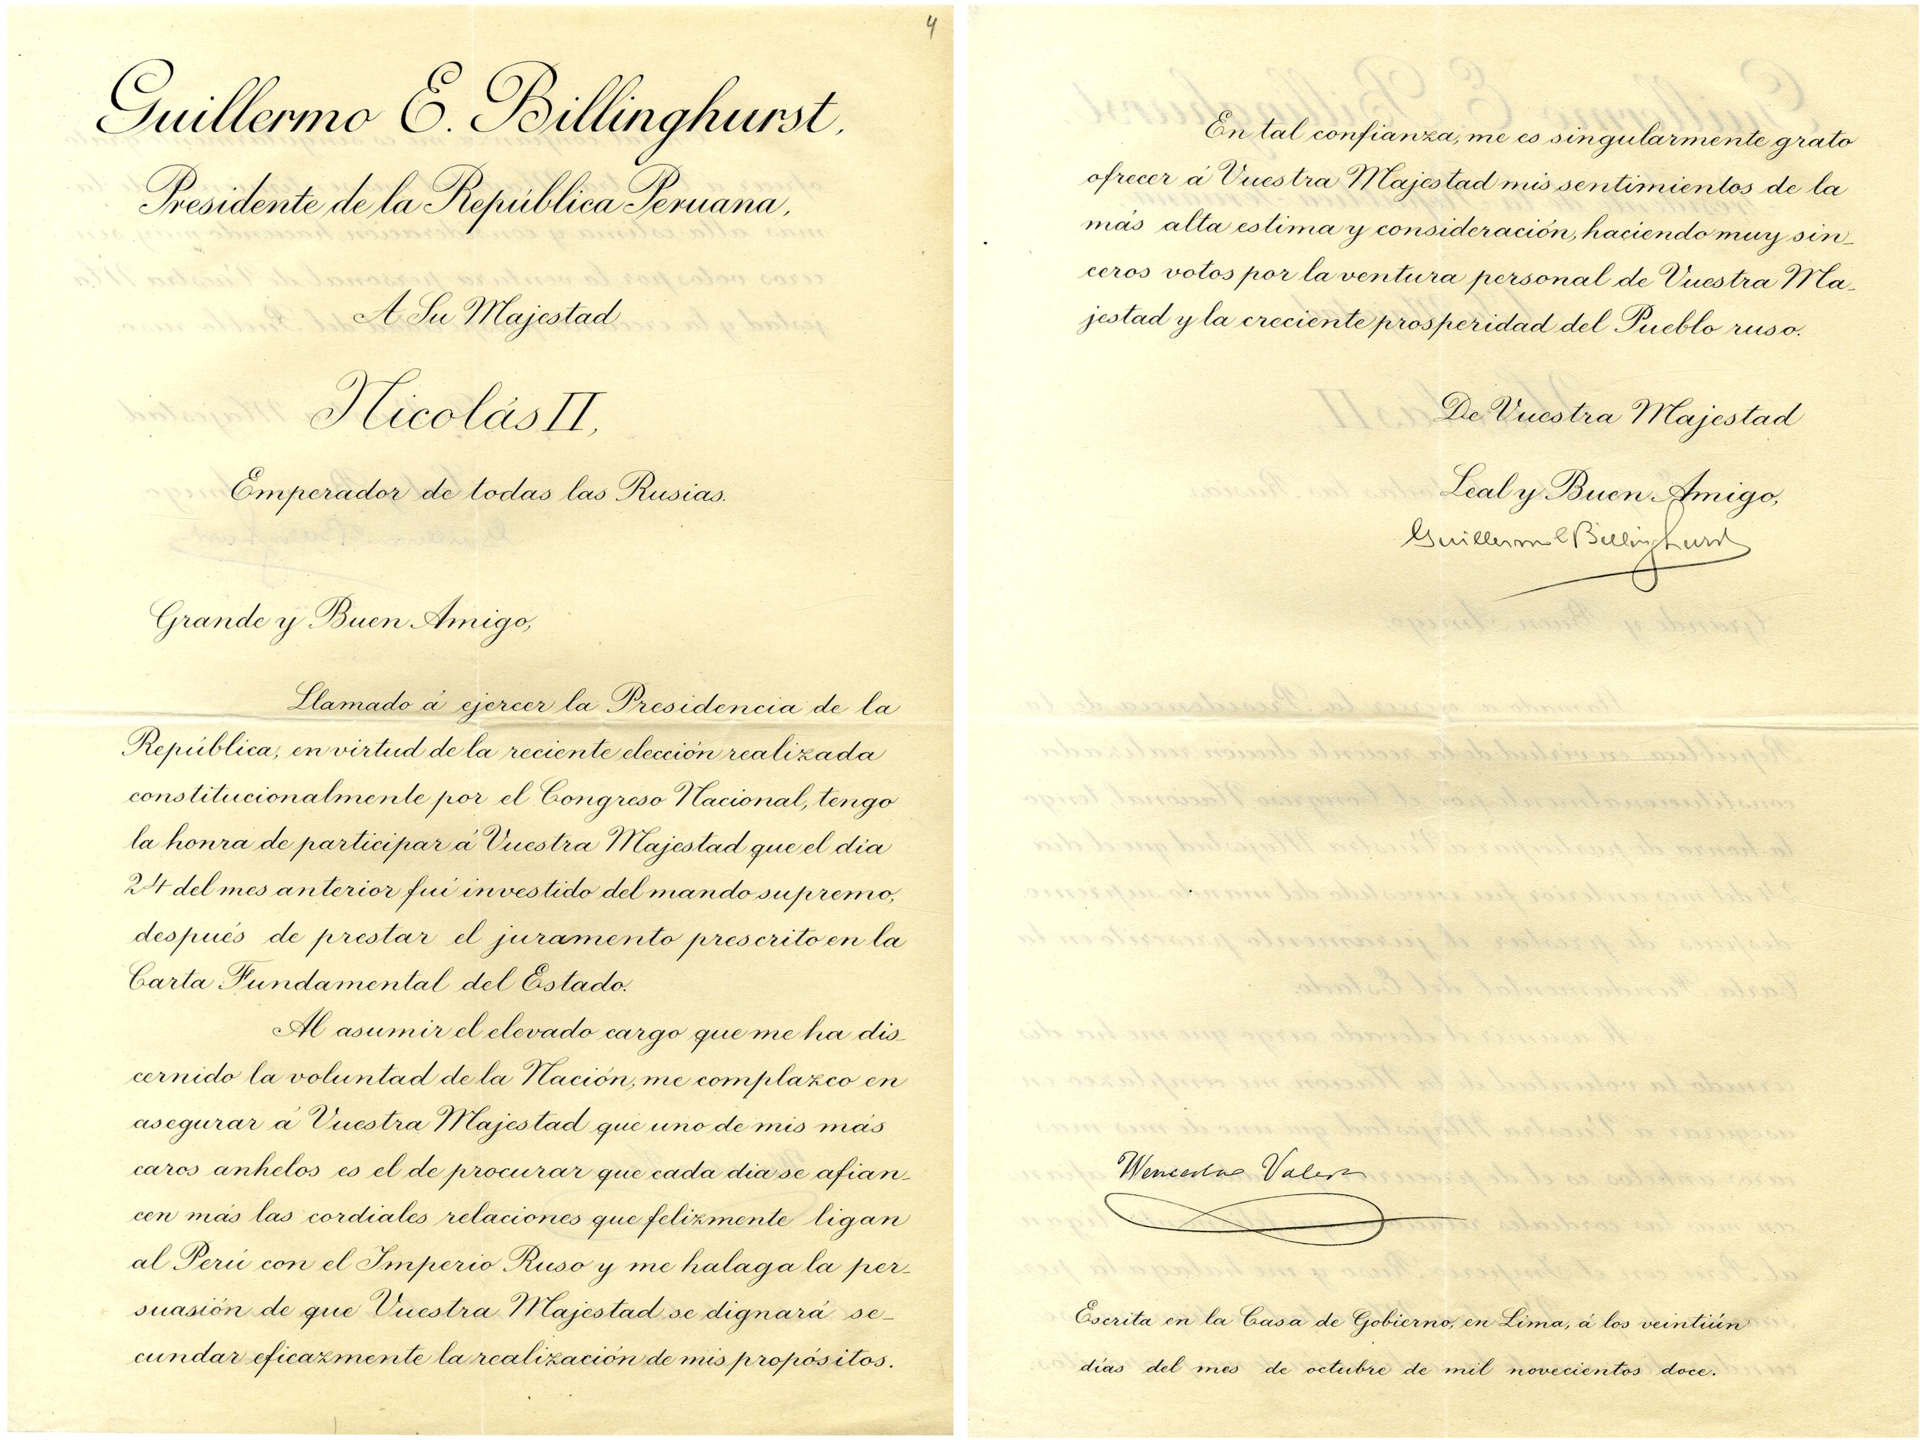 Carta del presidente de Perú, Guillermo Enrique Billinghurst, al emperador de Rusia, Nicolás II anunciando su elección como presidente de la República y reiterando “sus deseos de afianzar cada vez más las relaciones bilaterales”. 20 de octubre de 1912.